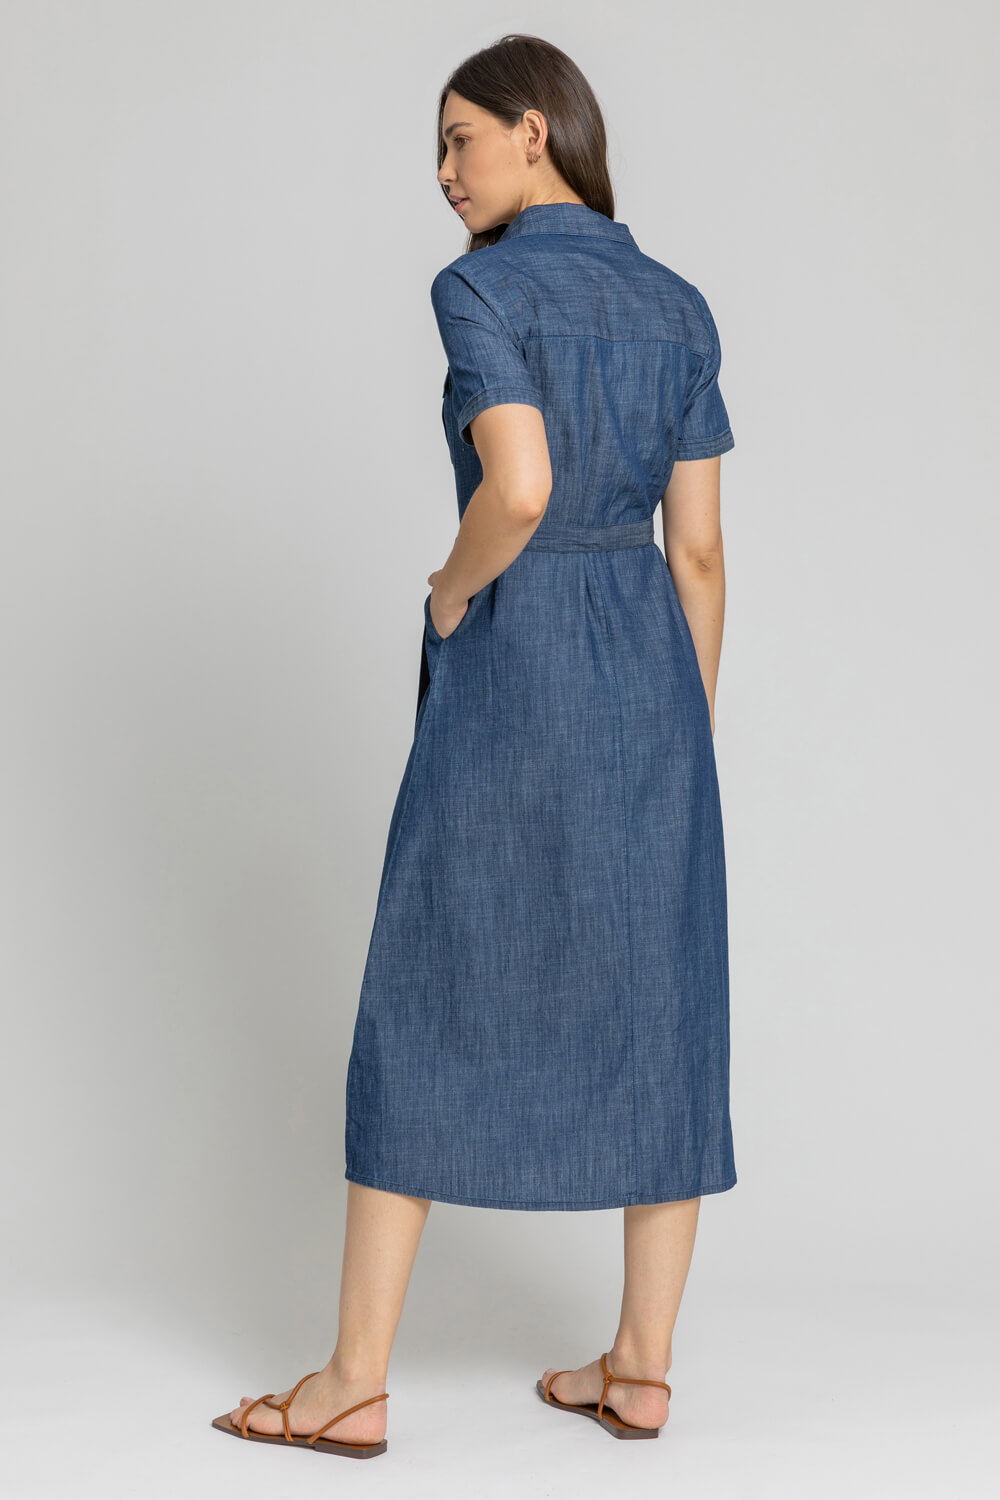 Blue Denim Pocket Detail Shirt Dress, Image 2 of 5